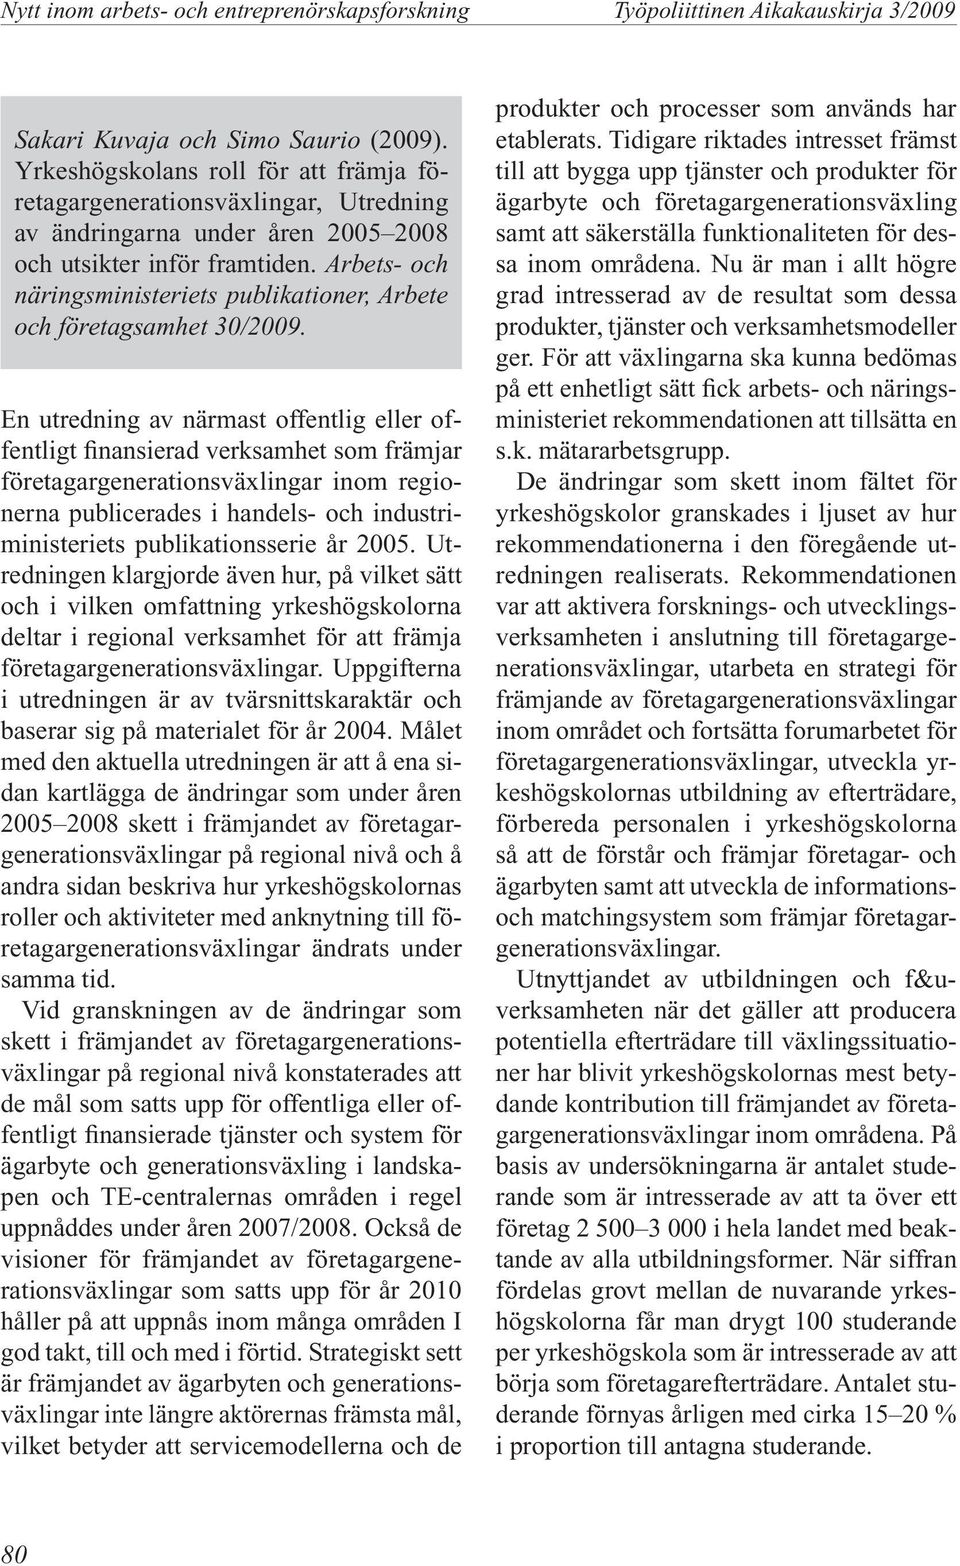 Arbets- och näringsministeriets publikationer, Arbete och företagsamhet 30/2009.